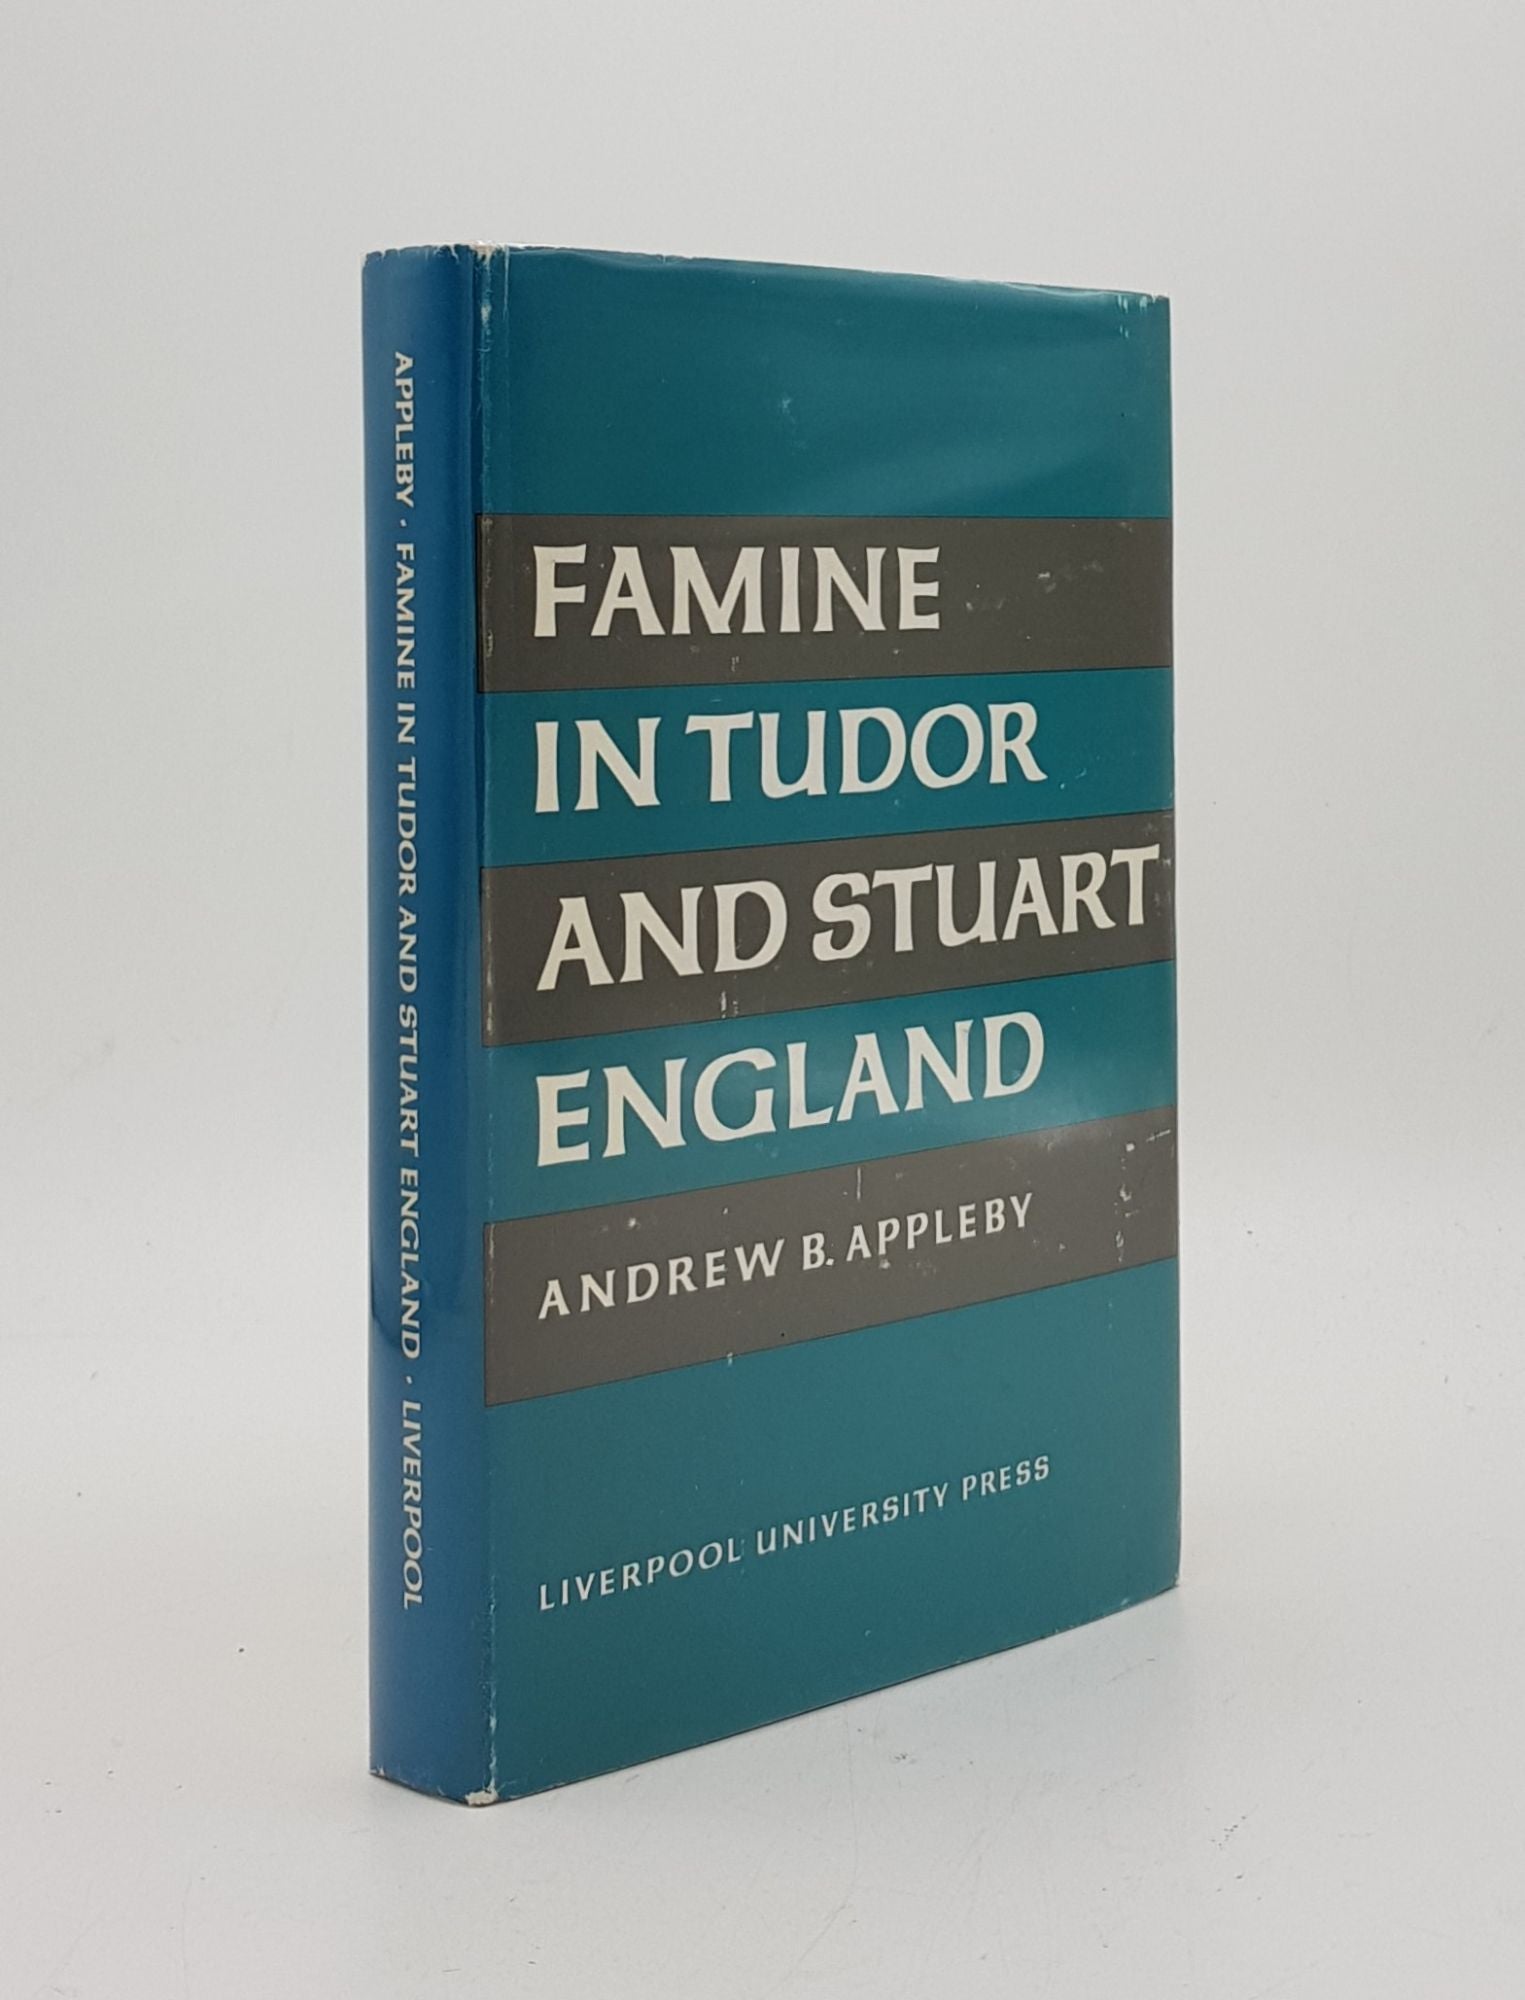 APPLEBY Andrew B. - Famine in Tudor and Stuart England